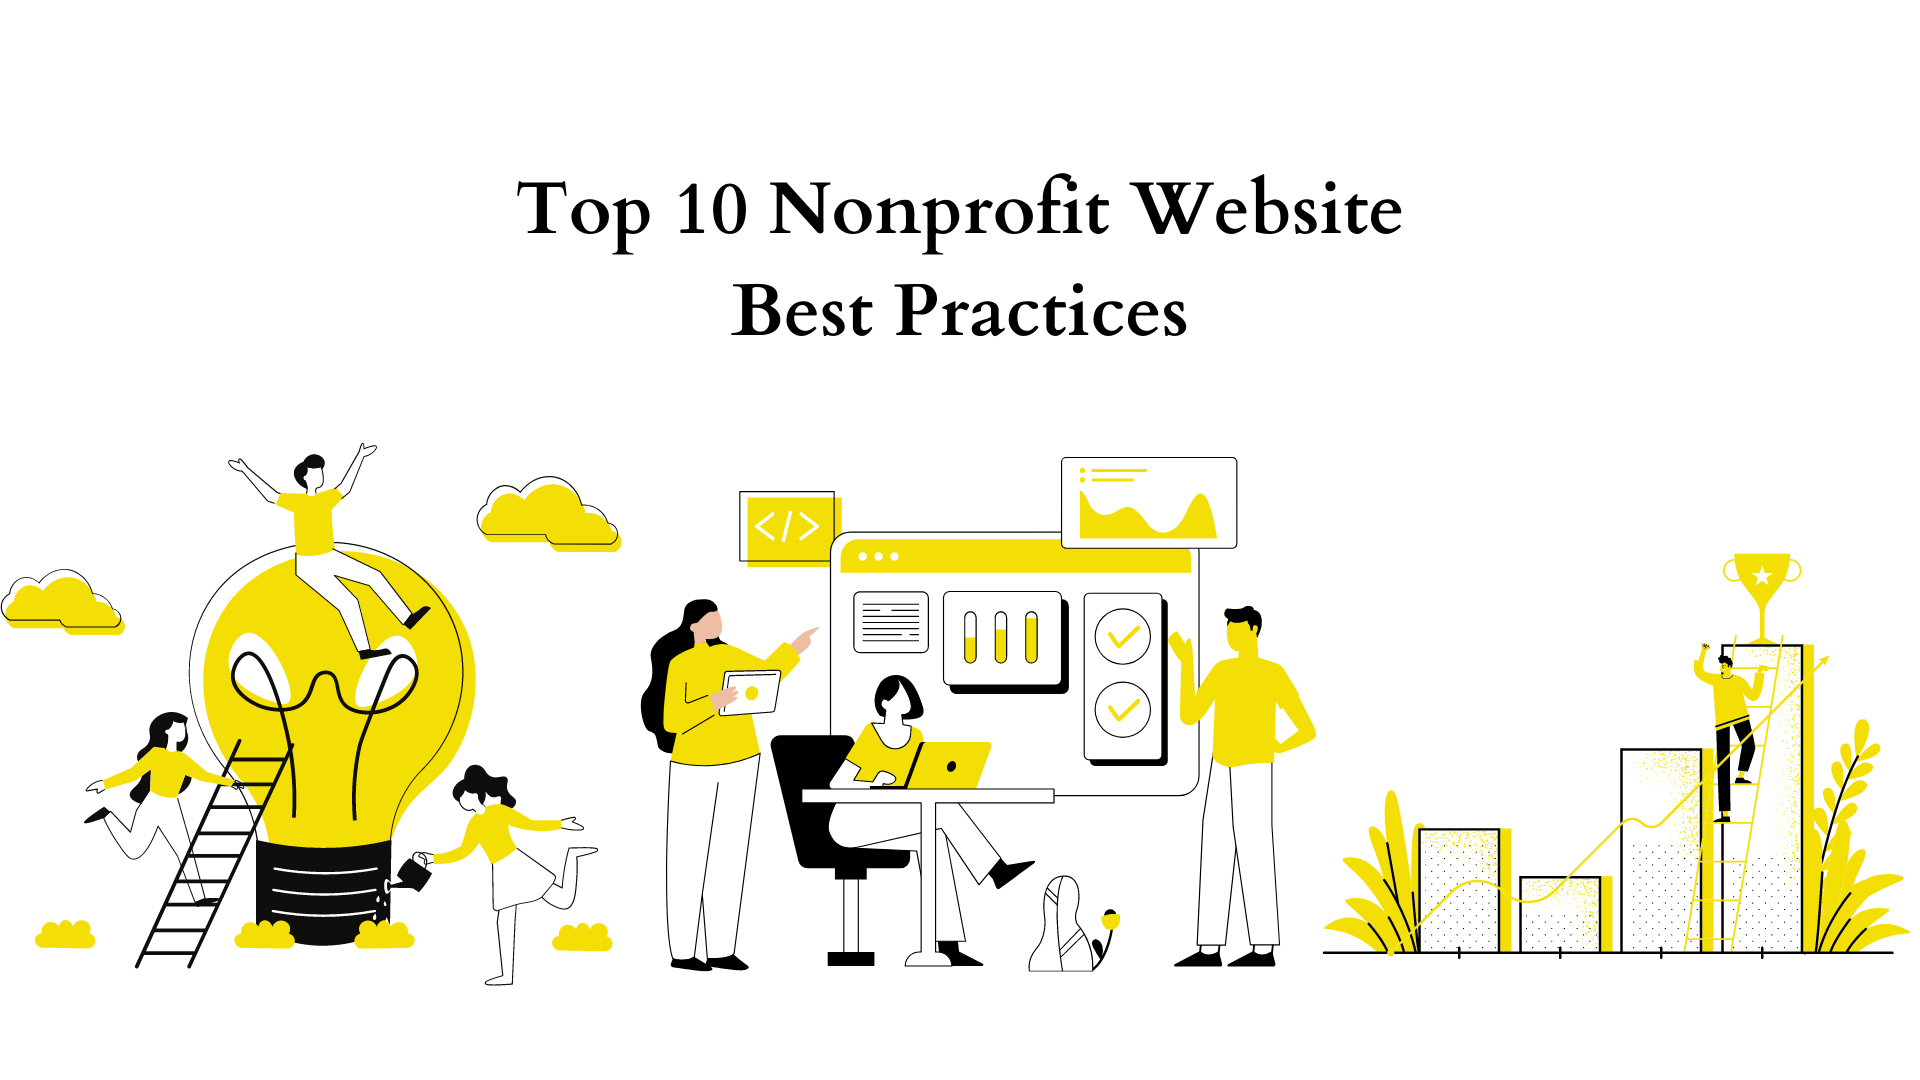 Top 10 Nonprofit Website Best Practices